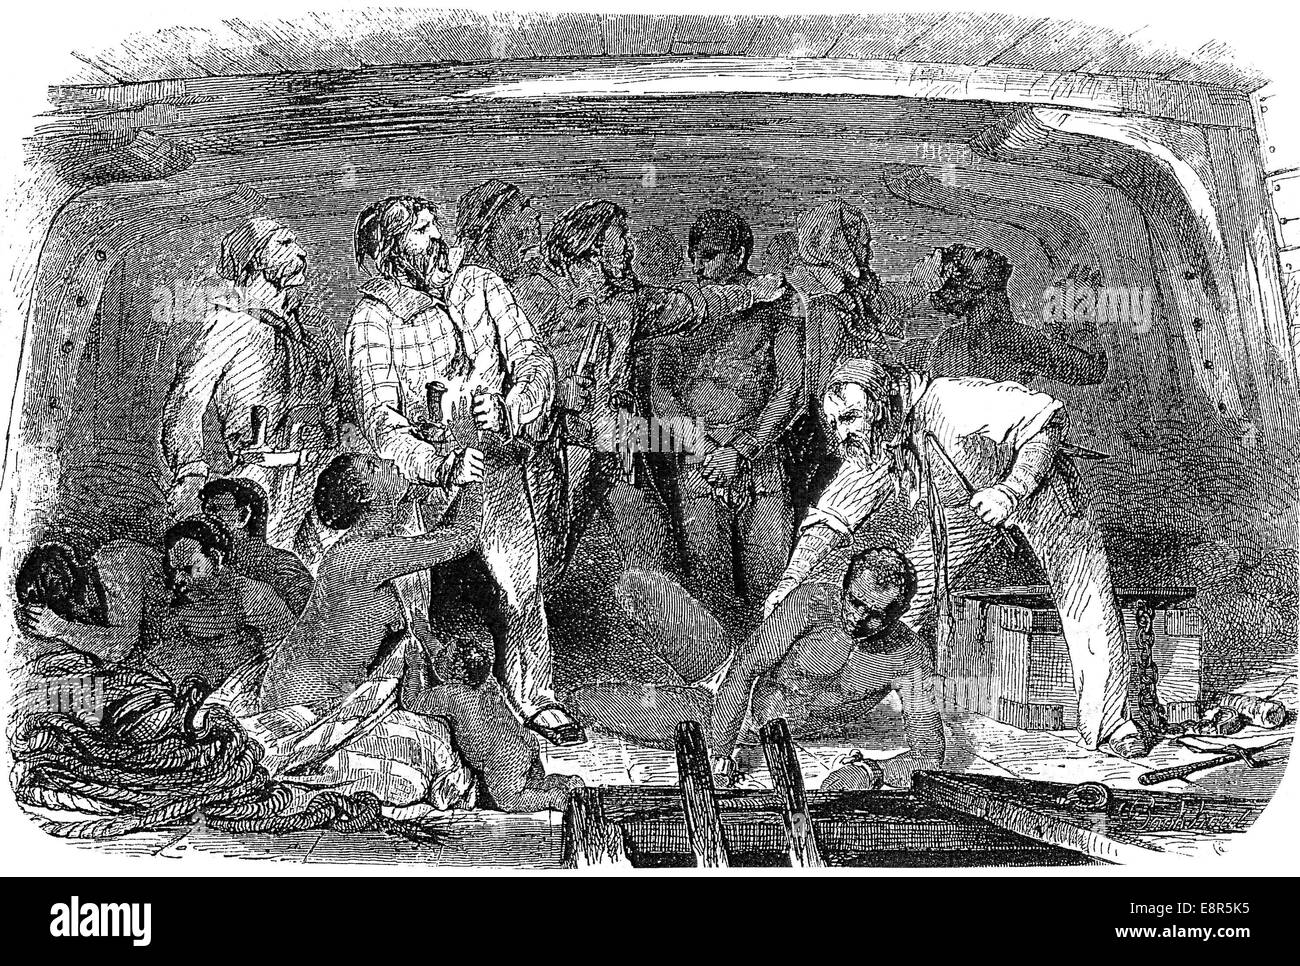 Sklaverei-Segler setzen Sklaven in einem Schiff halten ca. 1820 Stockfoto